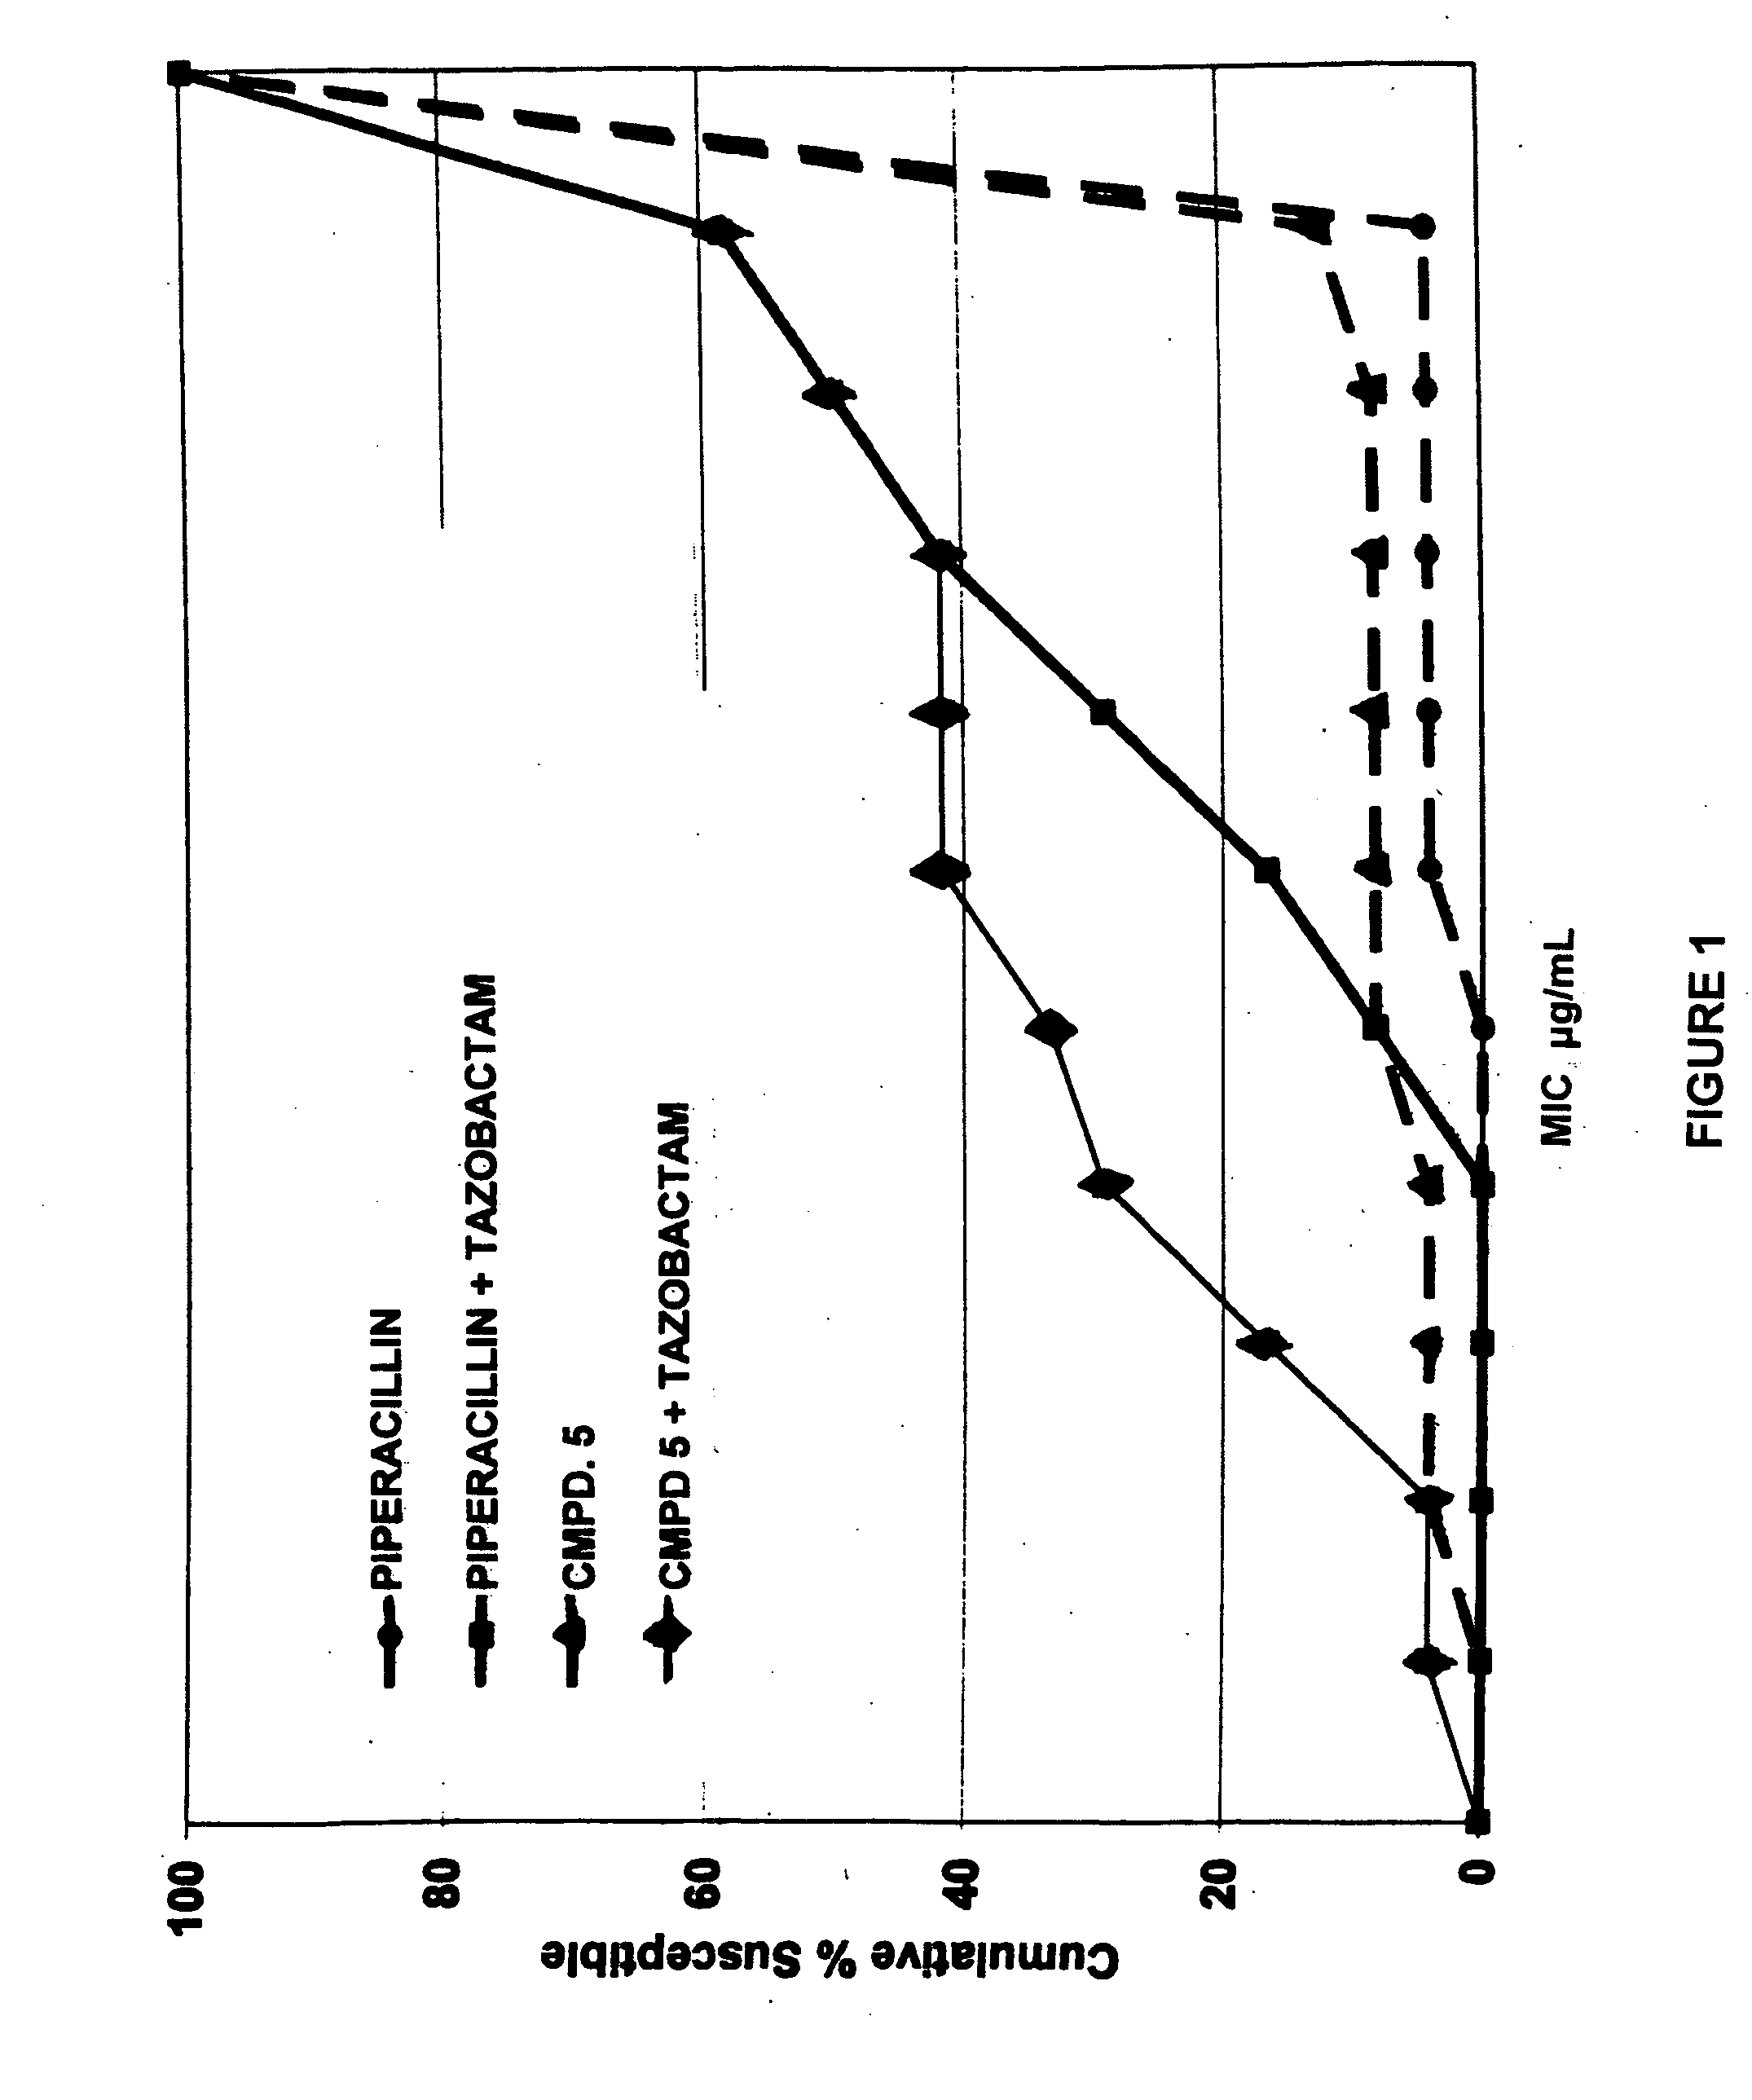 Compositions comprising carbacephem beta-lactam antibiotics and beta-lactamase inhibitors